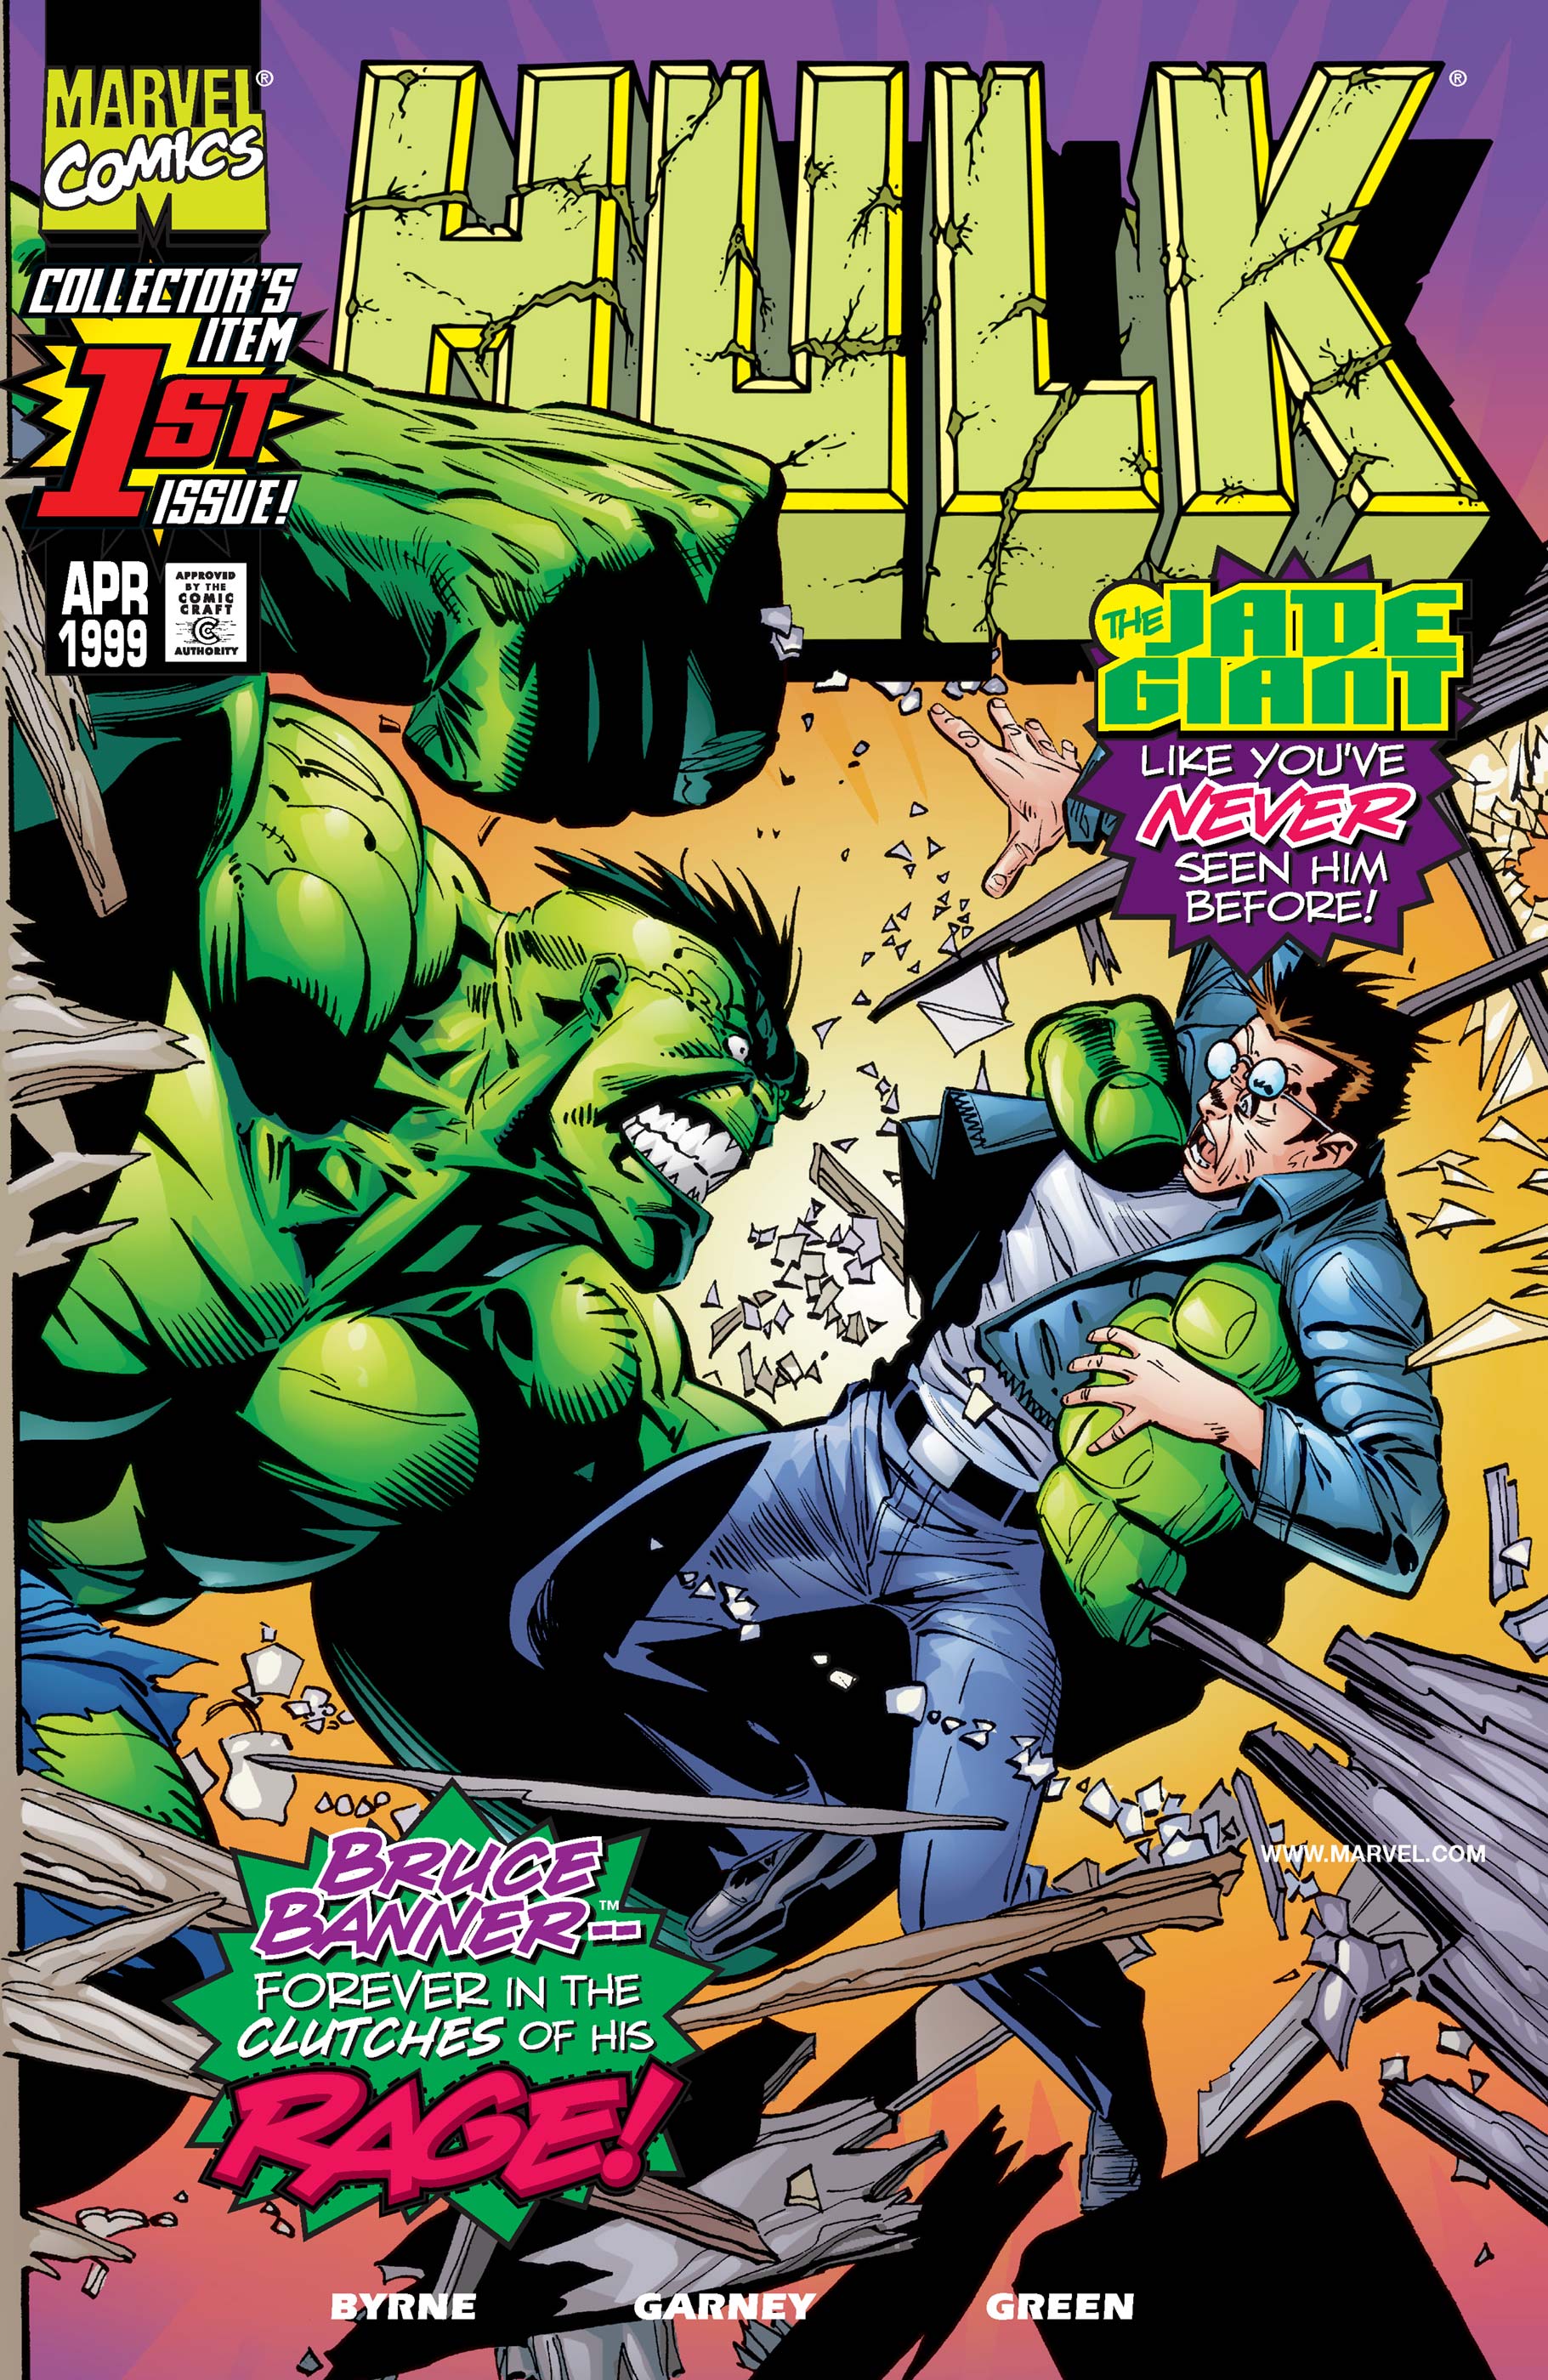 Hulk (1999) #1